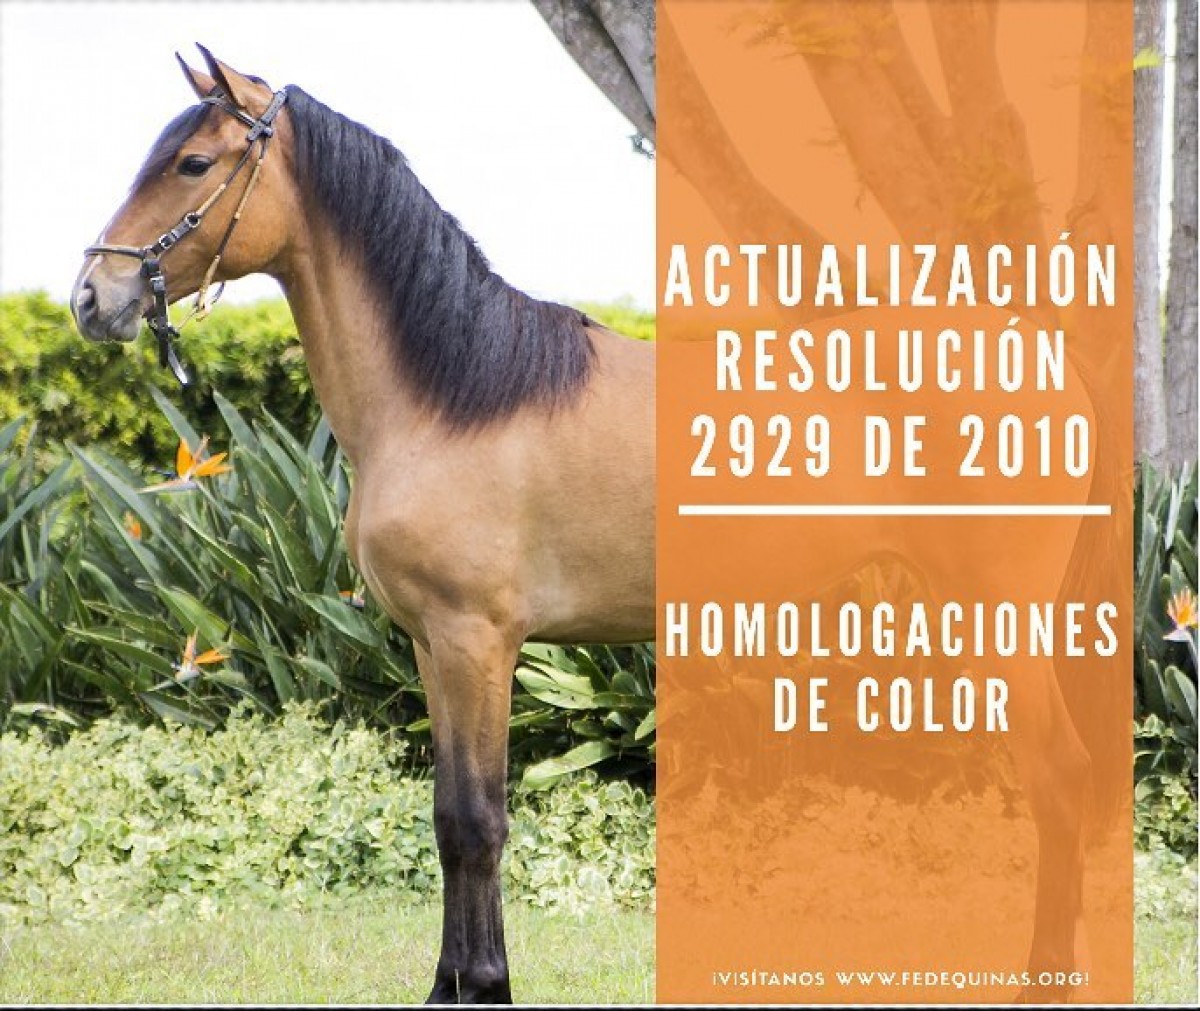 Fedequinas: Homologación Por Color, Actualización de la Resolución 2929 del 2010 